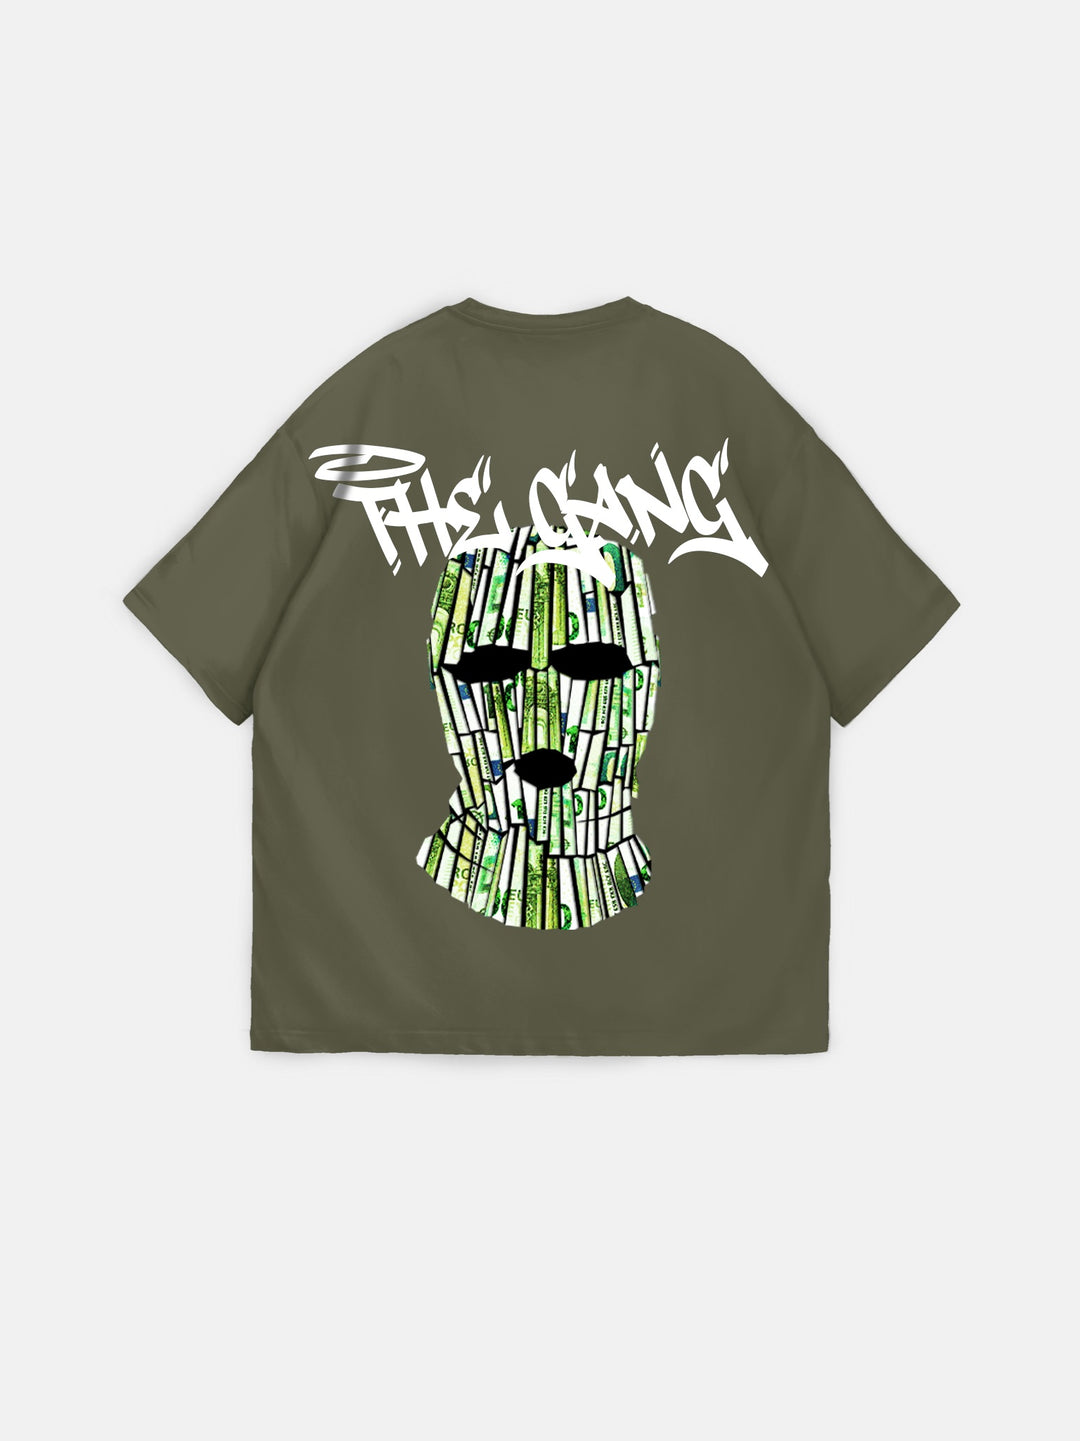 Oversize 'The Gang' T-shirt - Terrarium